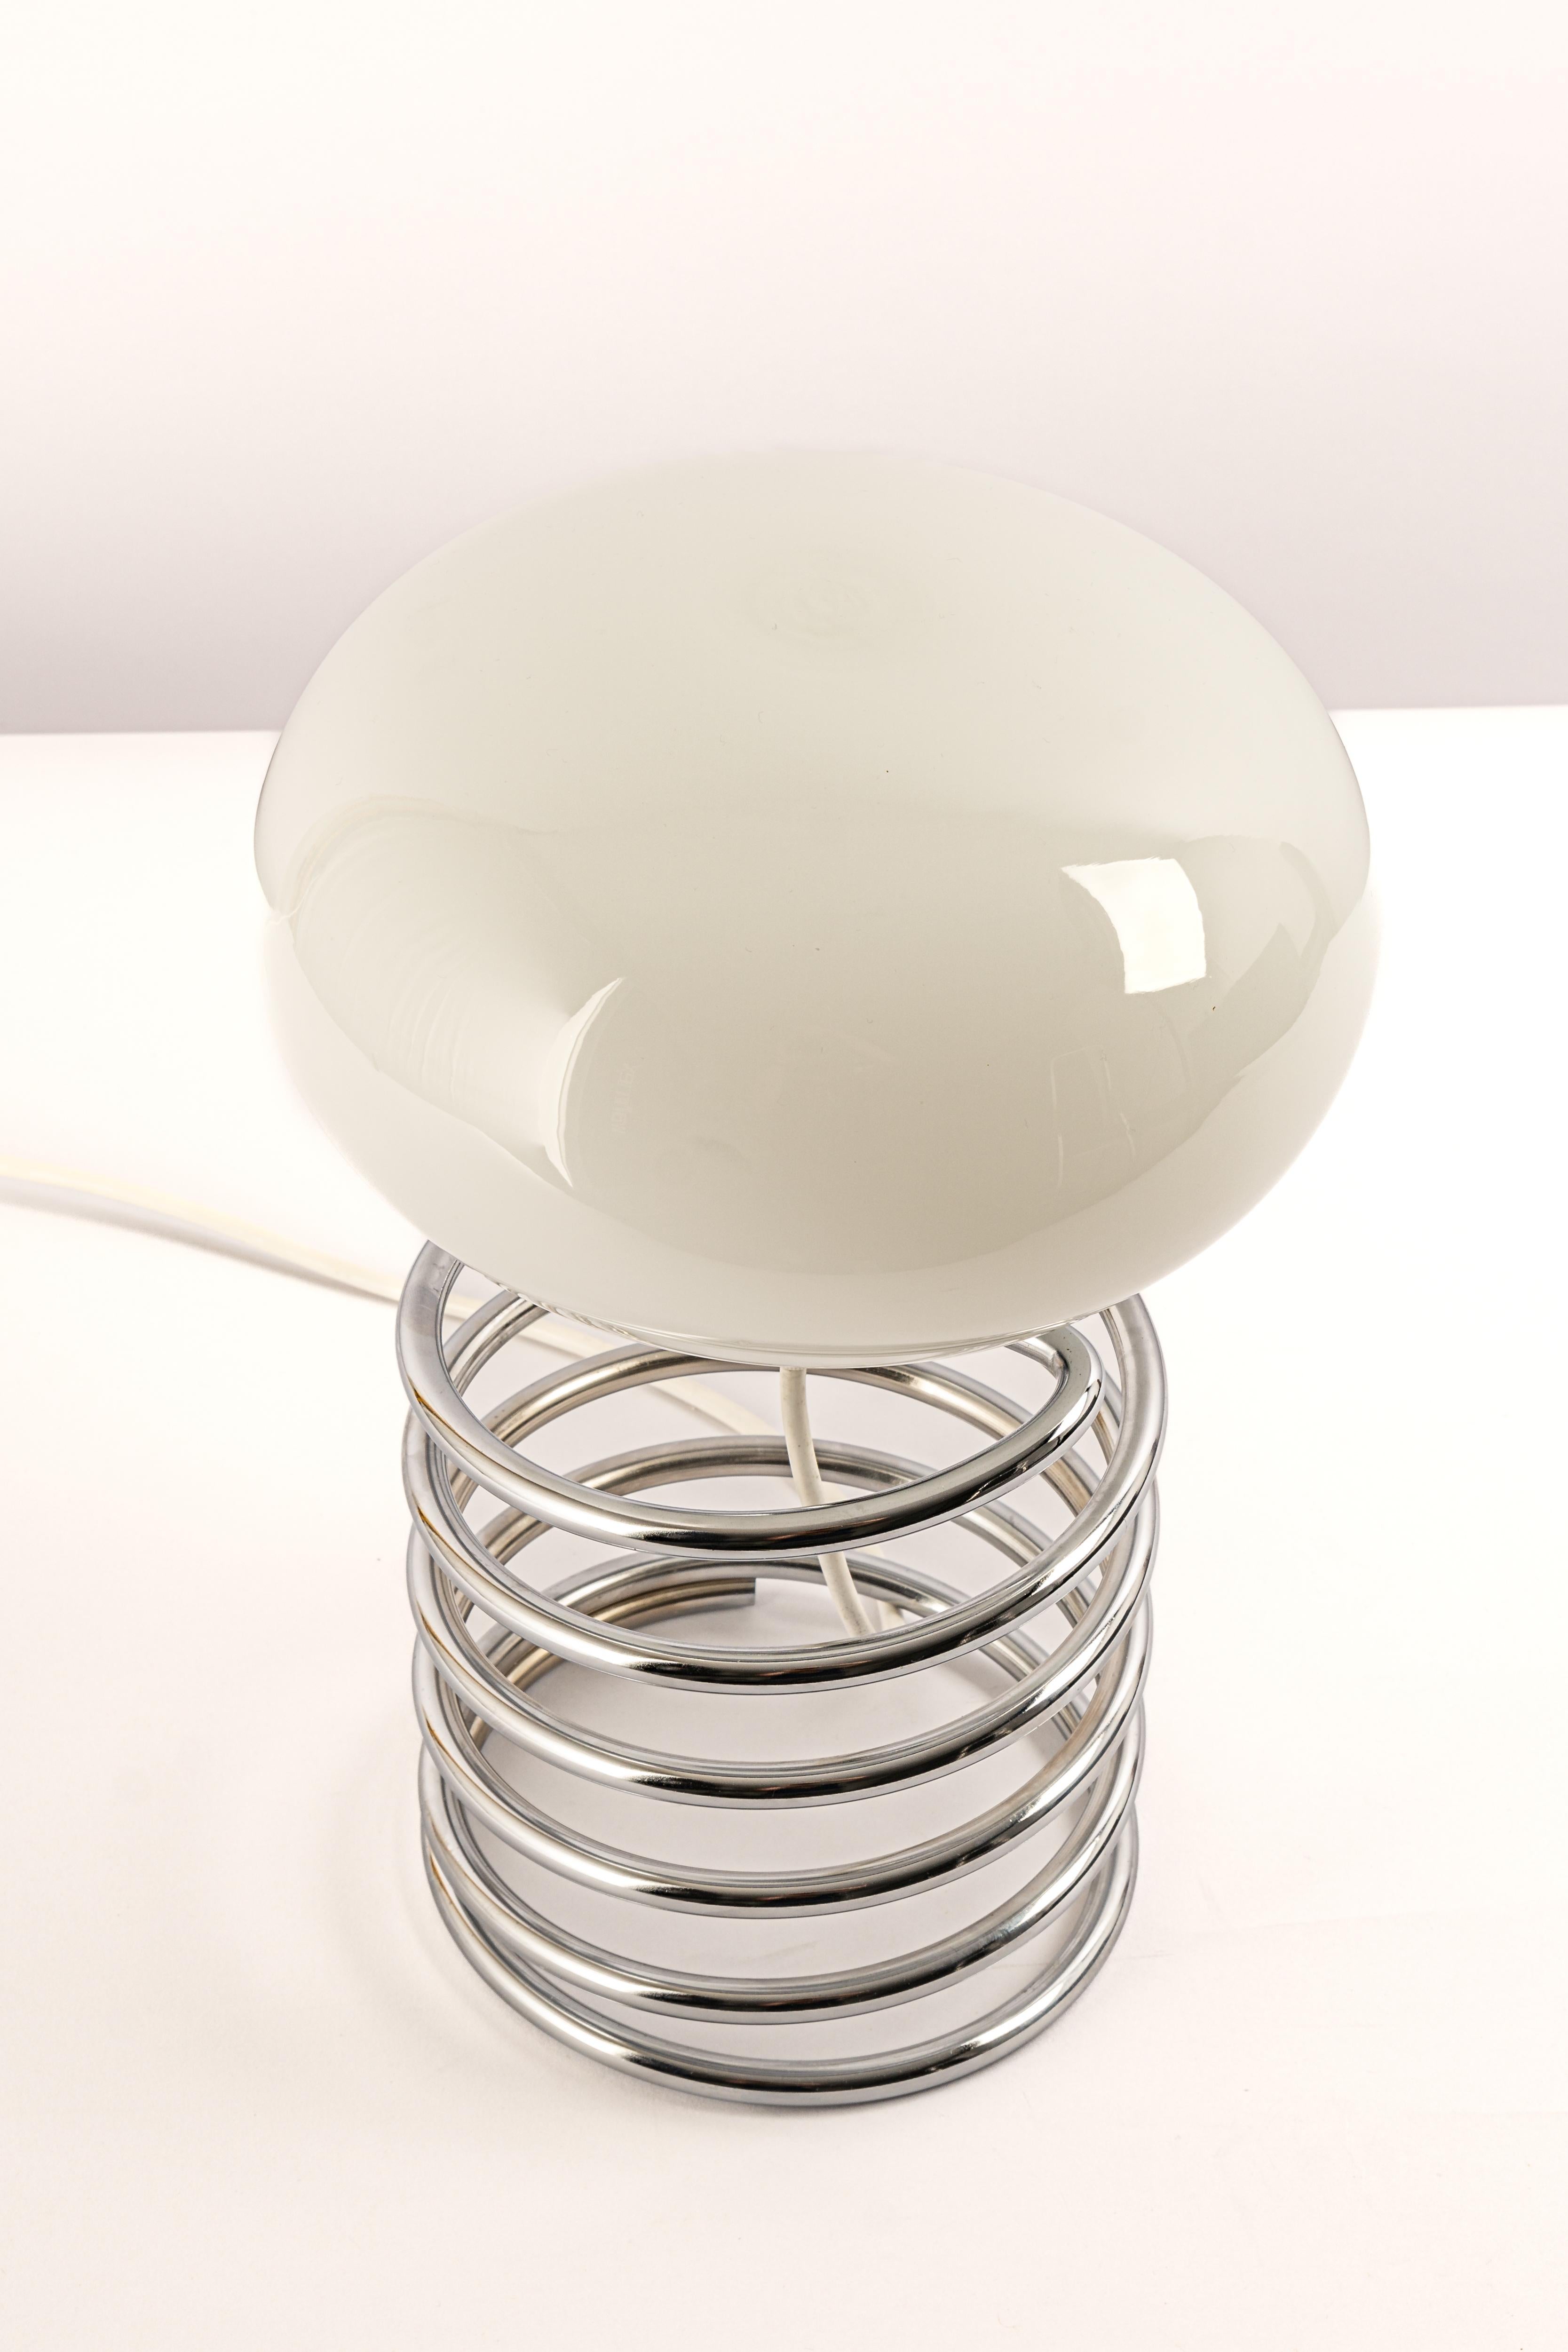 Merveilleuse lampe de table en spirale dans le style du designer Ingo Maurer, Allemagne, années 1970. 
Grande forme avec un abat-jour en verre blanc sur une base en acier spiralé chromé.

Douille : 1 x E27 ampoule standard.
Les ampoules ne sont pas